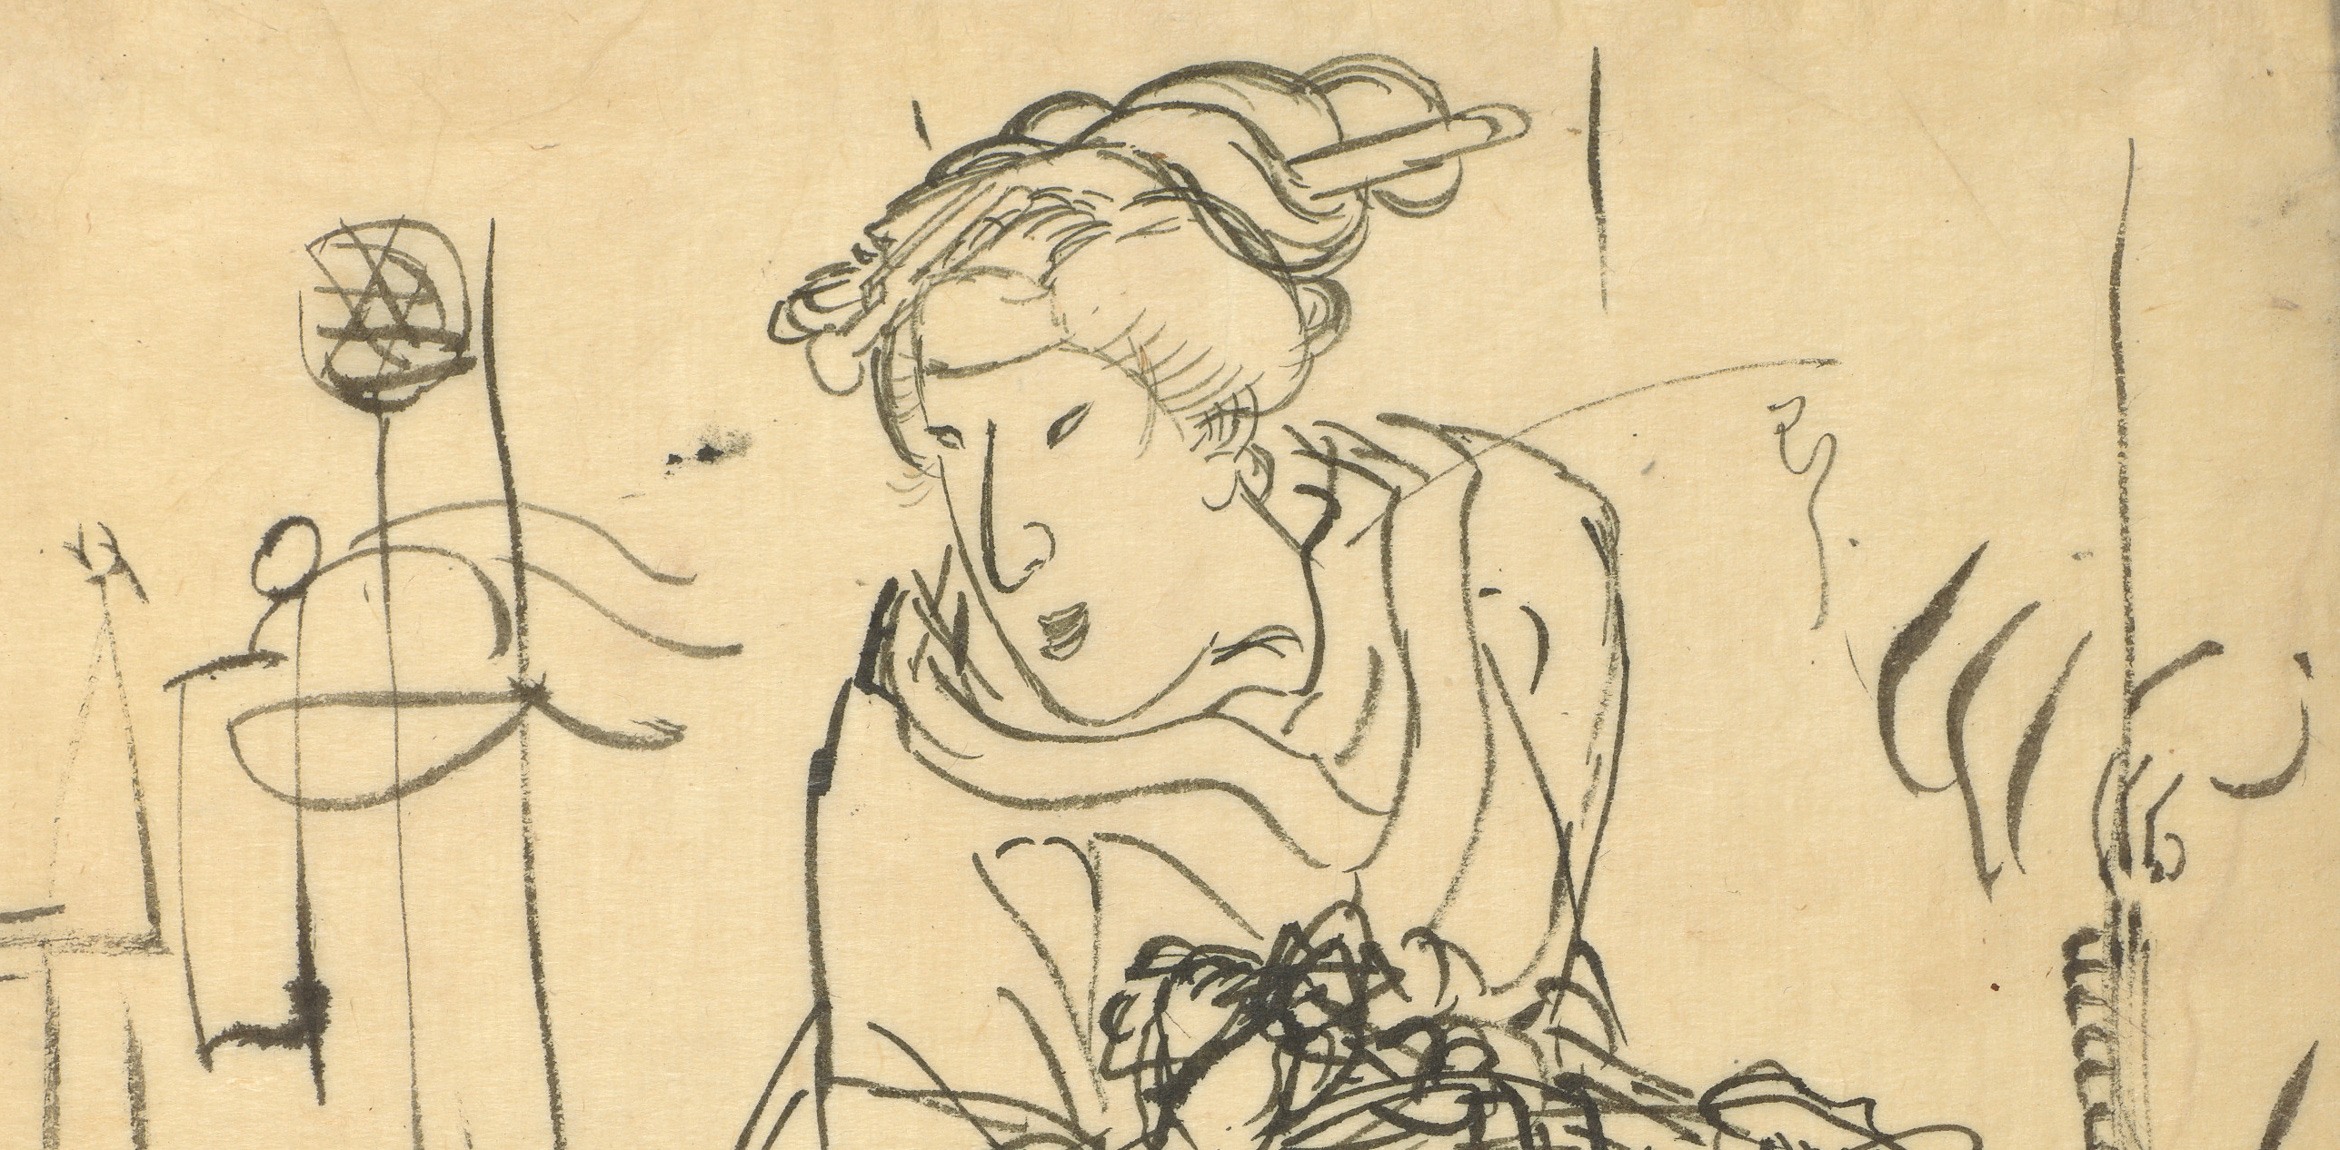 Utagawa Kuniyoshi's ink drawing 